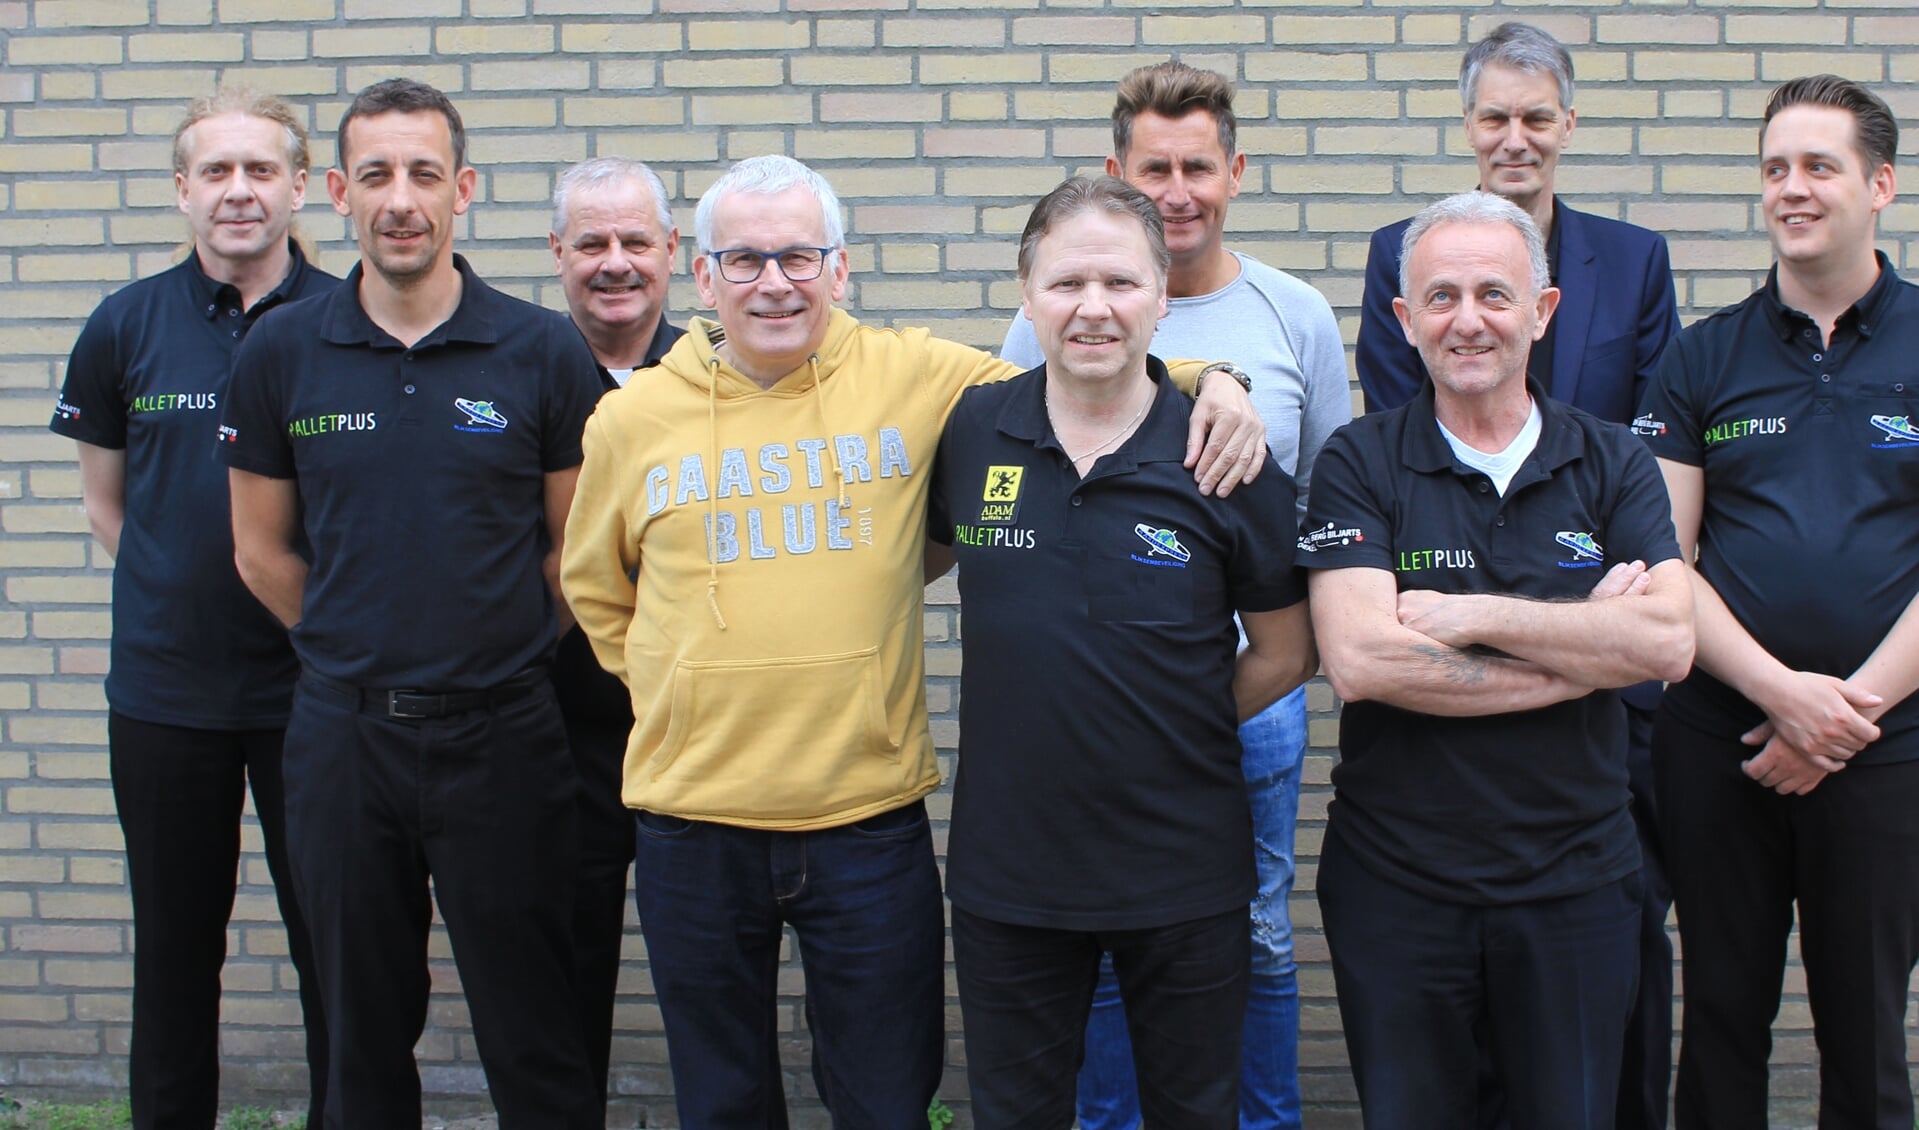 Het team van Aardexpress, Biljartcentrum Uden met op de voorgrond de vier spelers die afgelopen zondag Nederlands kampioen werden: Ronnie Lindemann, René Wijnen, Harrie vd Ven en Rudy de Laet